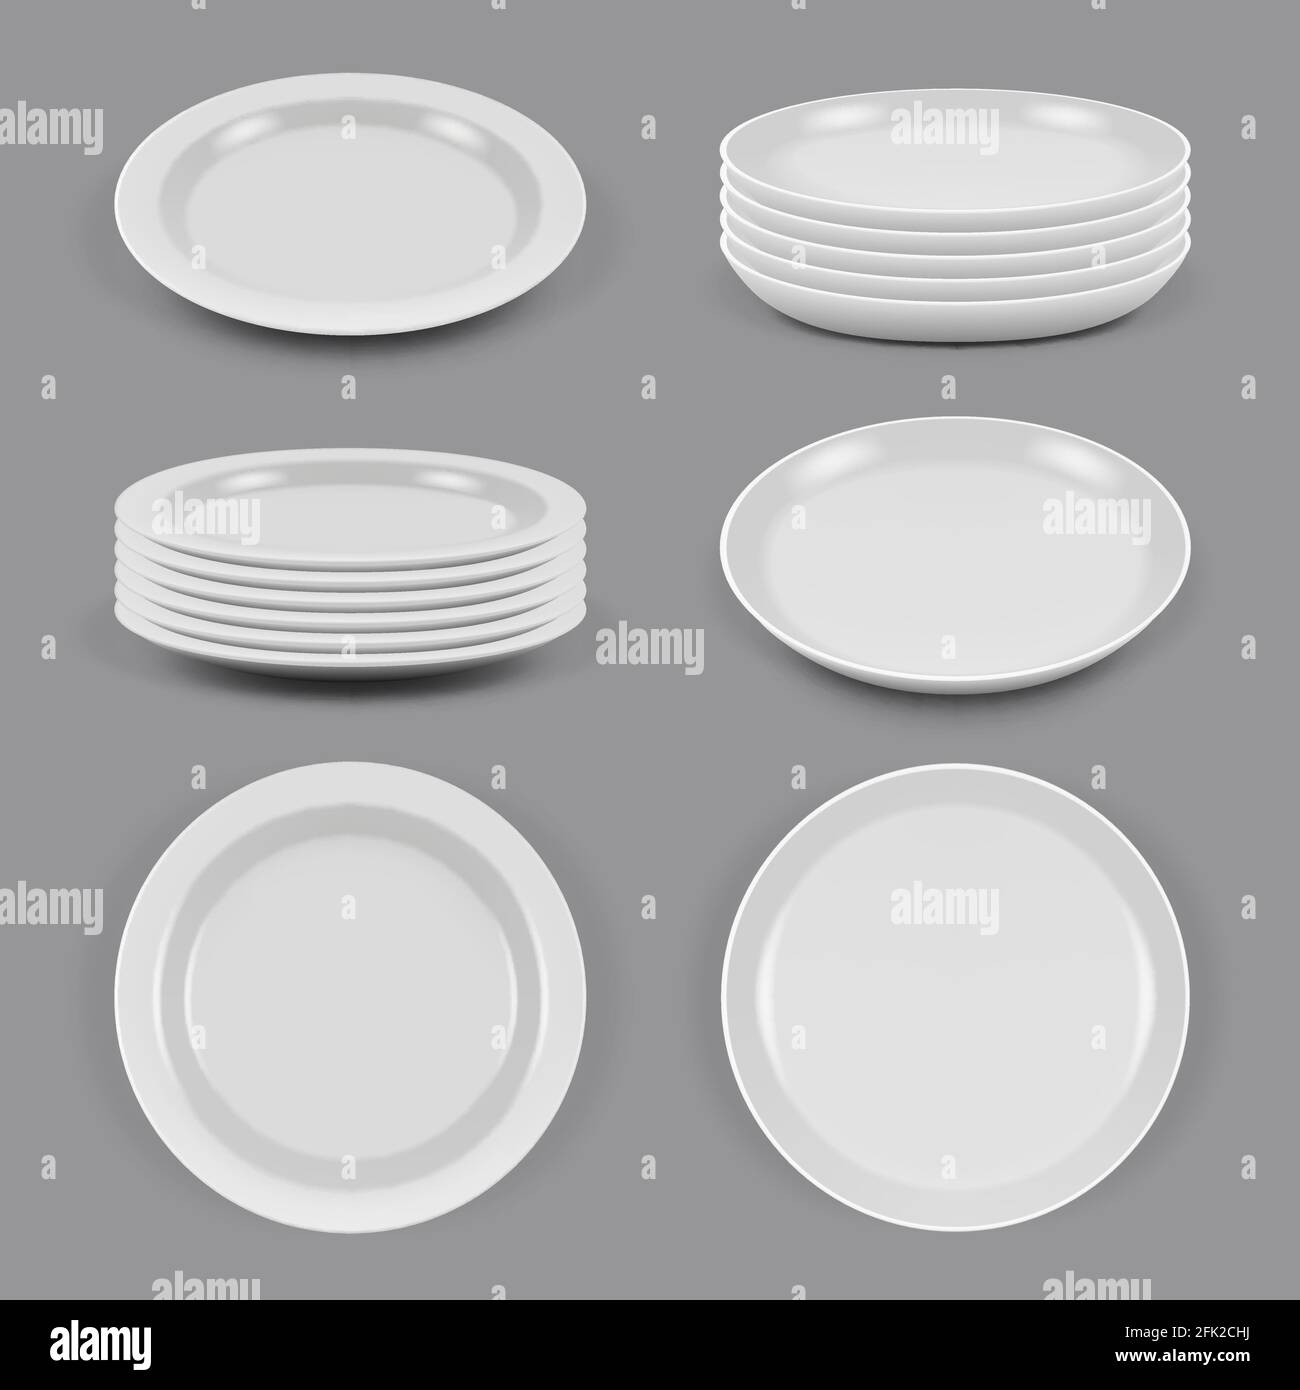 Keramikplatten. Realistische Geschirr für Lebensmittel Küchenutensilien  Schüsseln und Teller verschiedene Ecken Ansicht Vektor Mockup  Stock-Vektorgrafik - Alamy